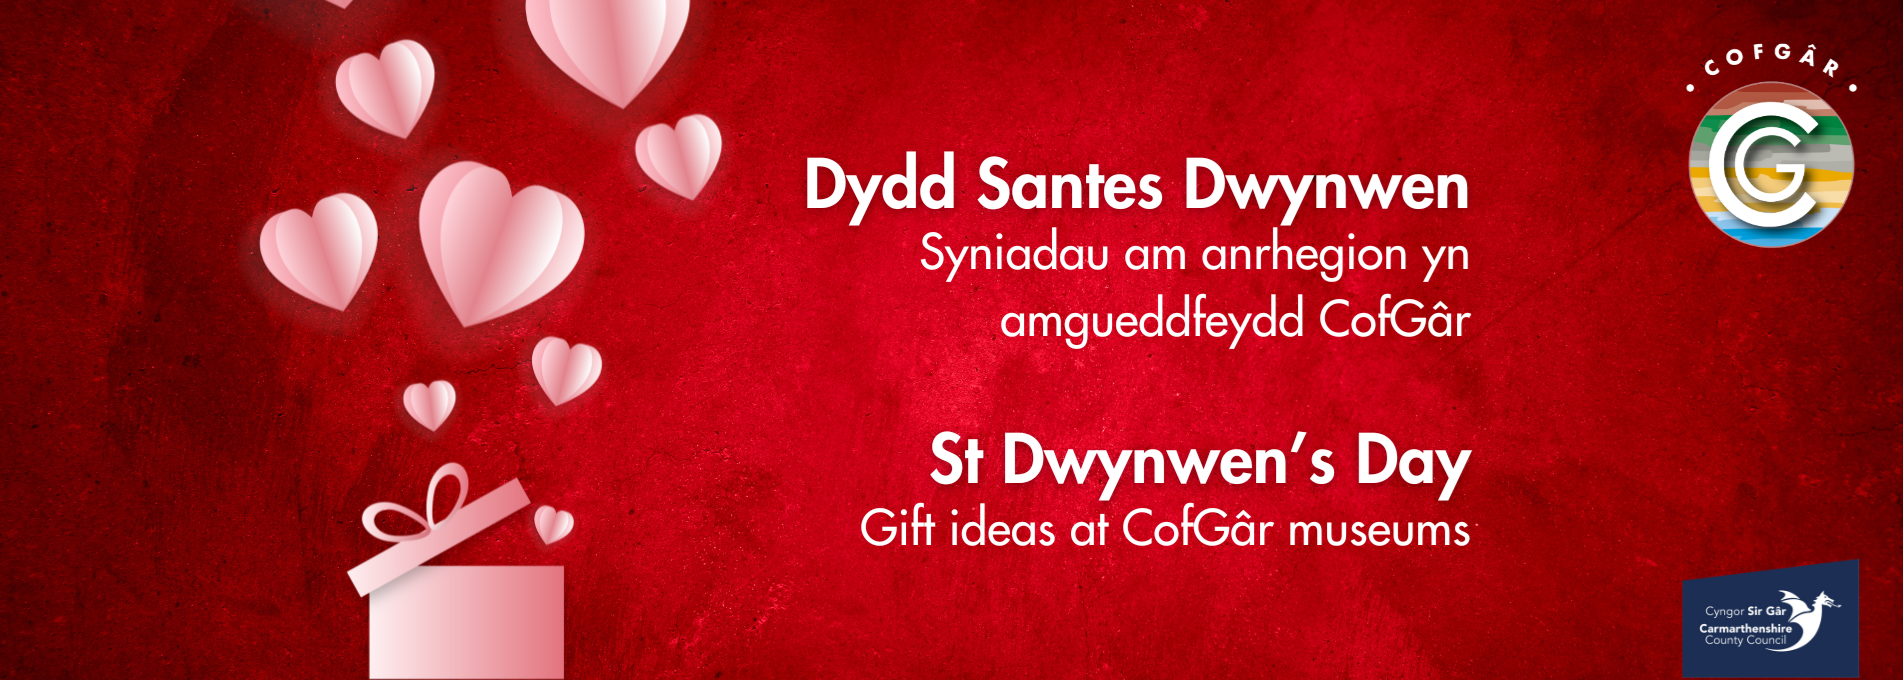 St Dwynwen's Day Gift Ideas